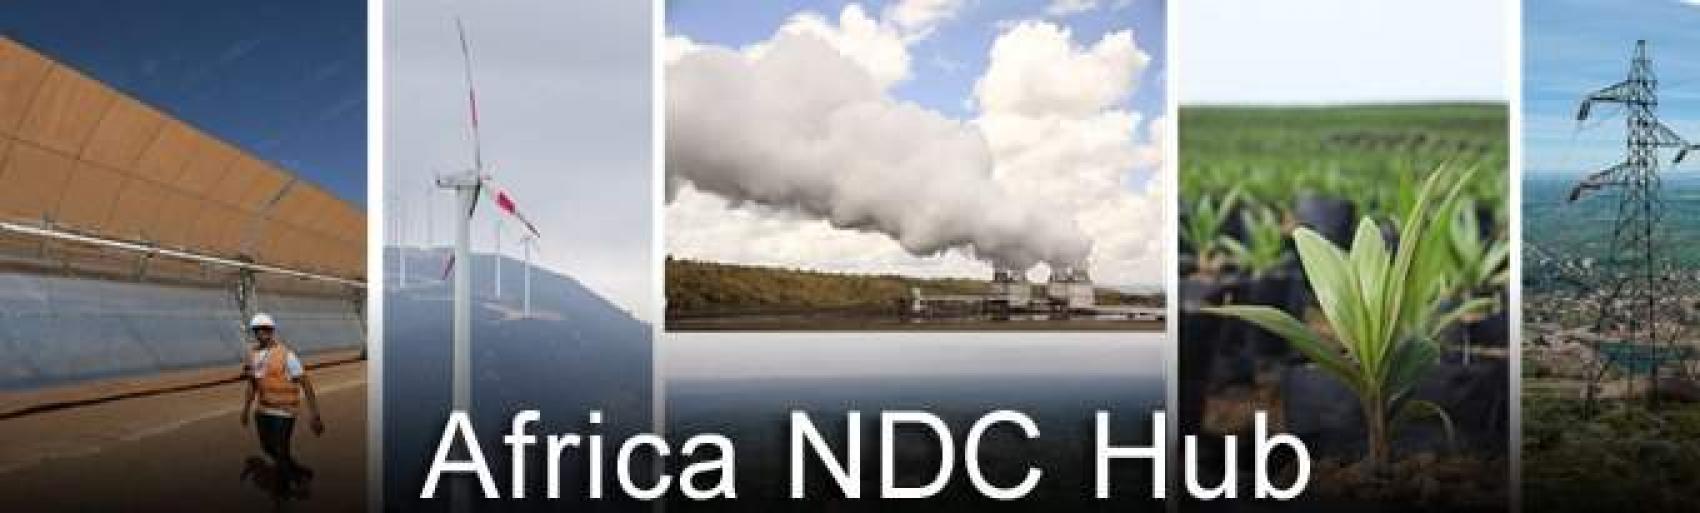 COP21 : Le Rwanda compte réduire de 16% ses émissions de co2 à l’horizon 2030